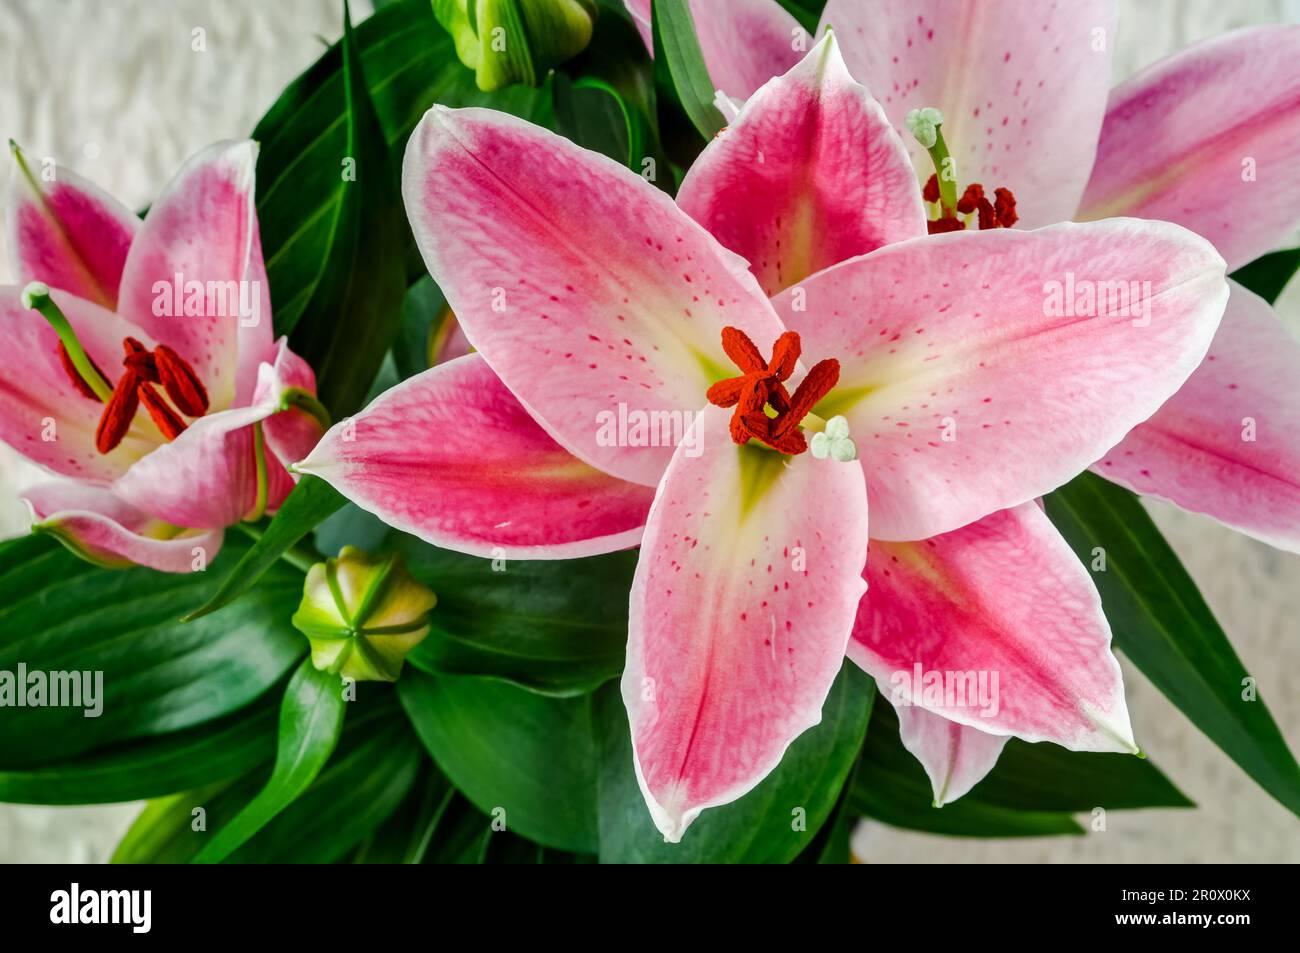 Asiatische Lilie, blühende farbenfrohe rosa Blume Nahaufnahme, dekorative elegante Blüten, Pflanzen aus der Gruppe von Hybriden, die aus ostasiatischen Arten stammen Stockfoto